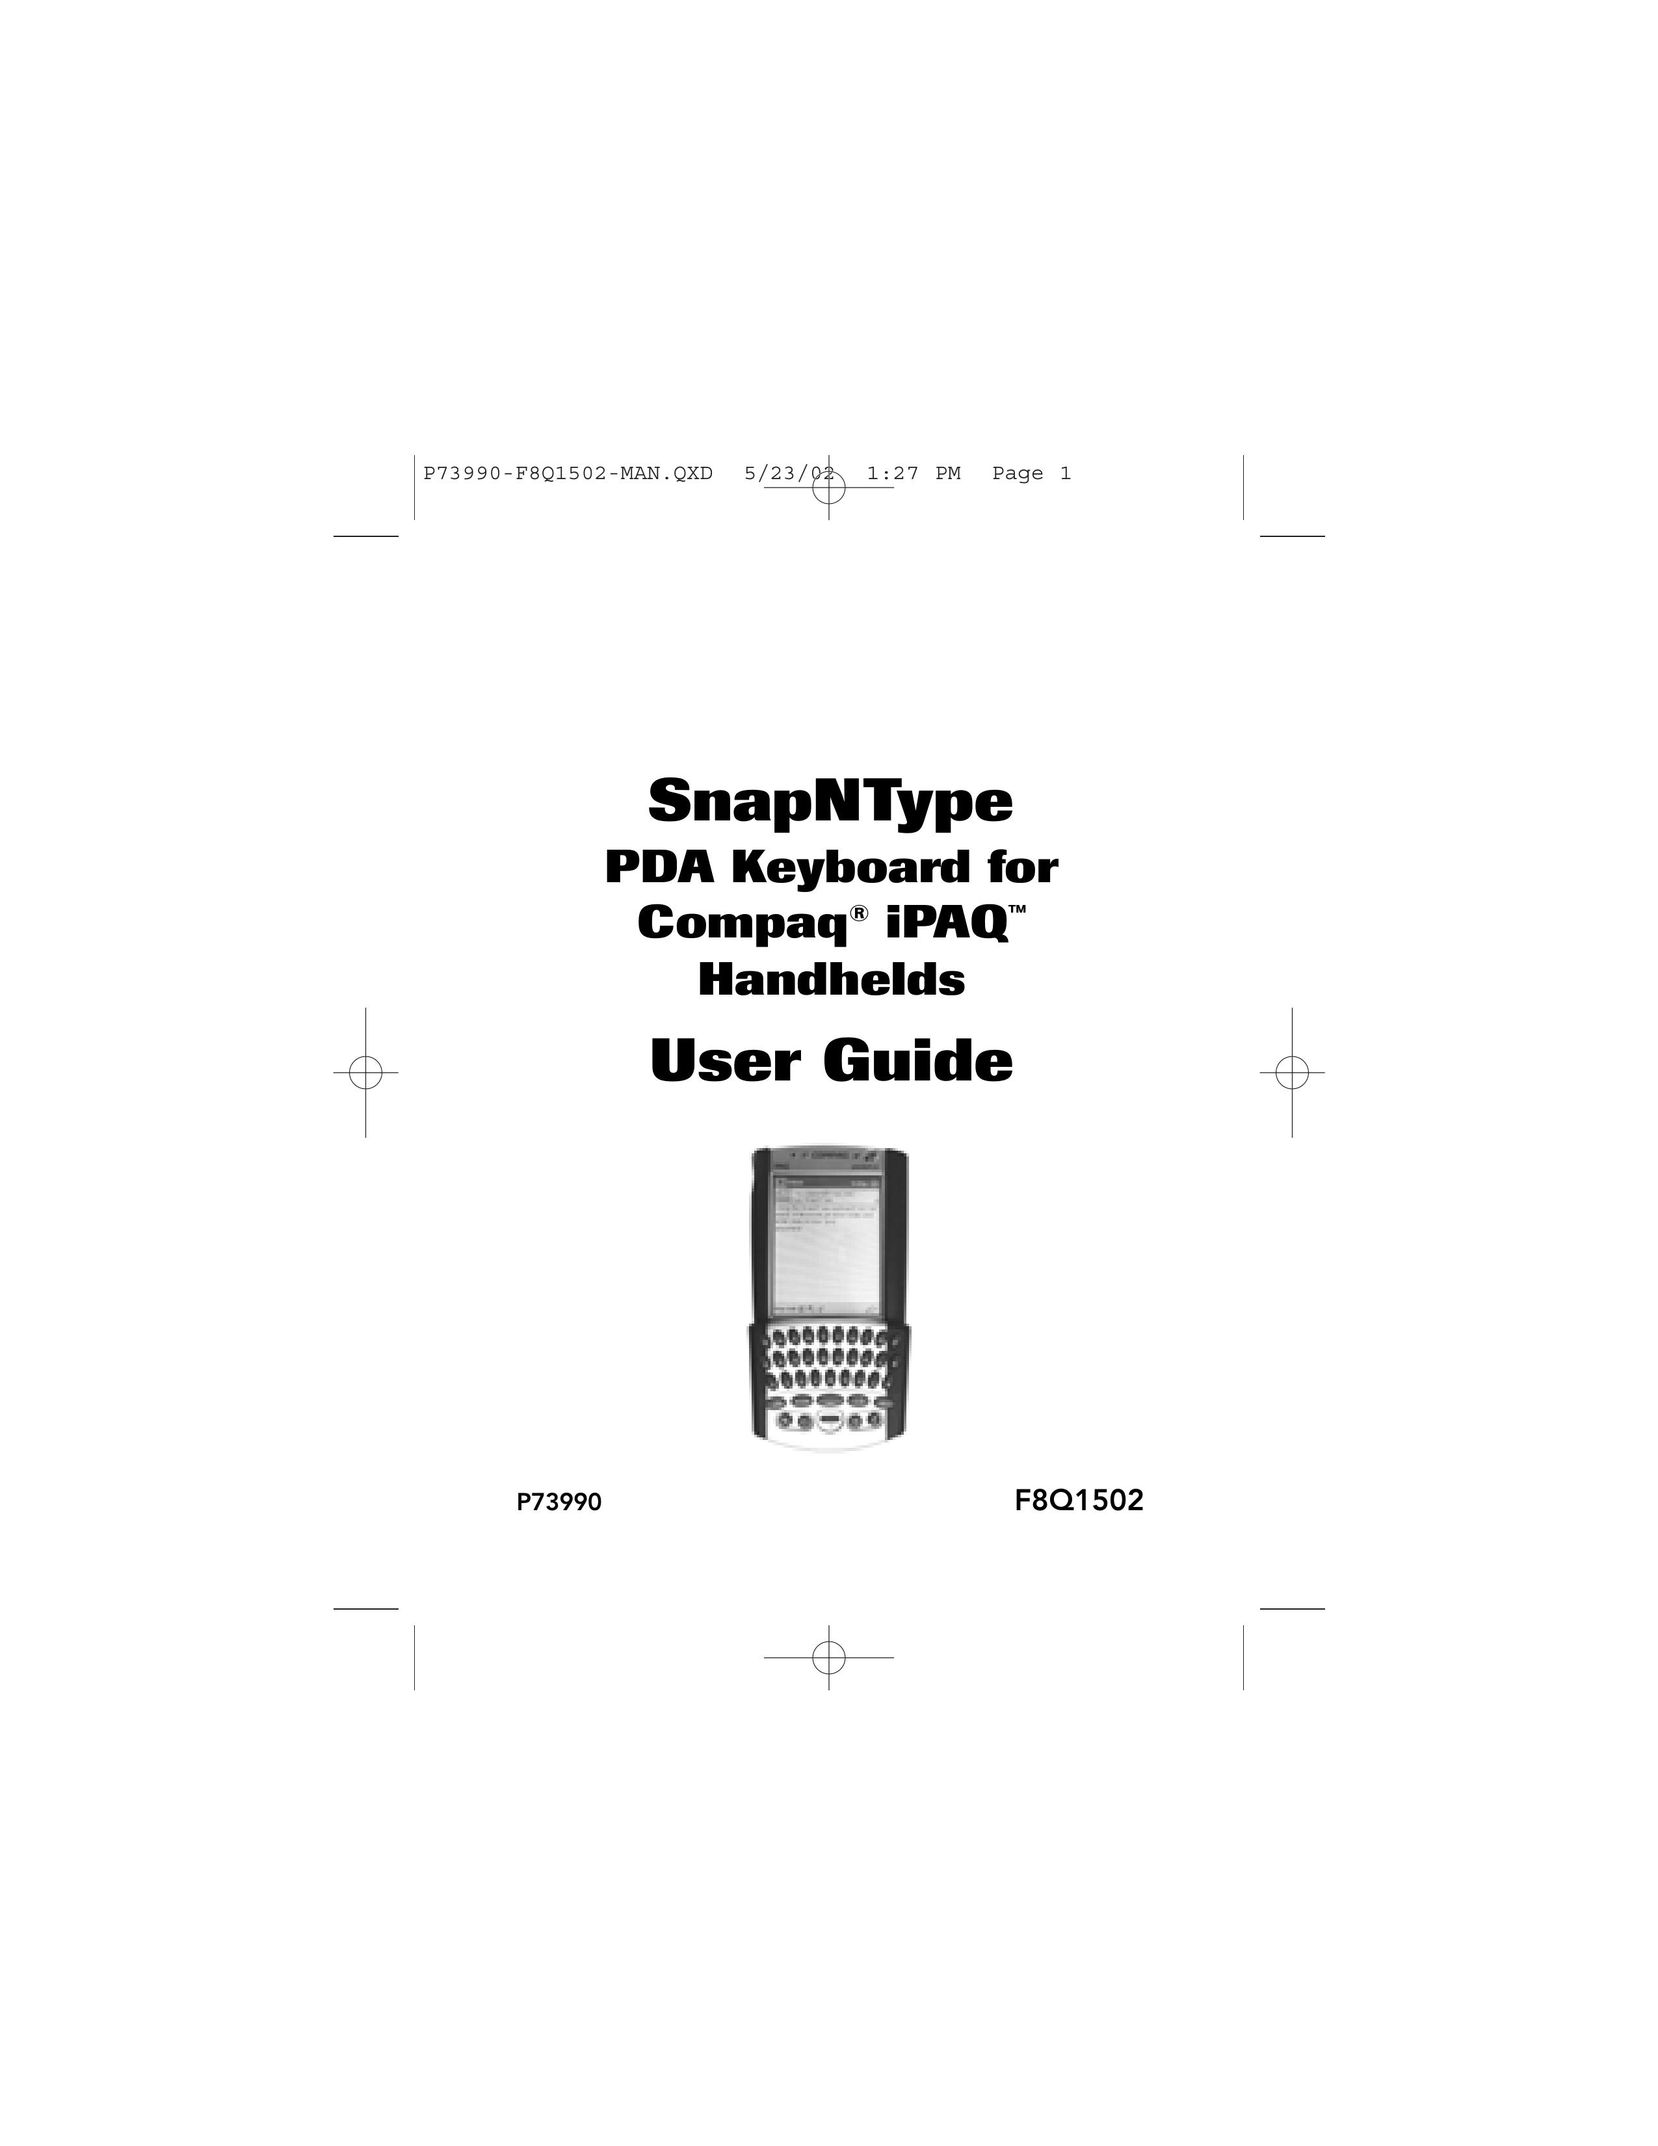 Belkin SnapNType Mouse User Manual